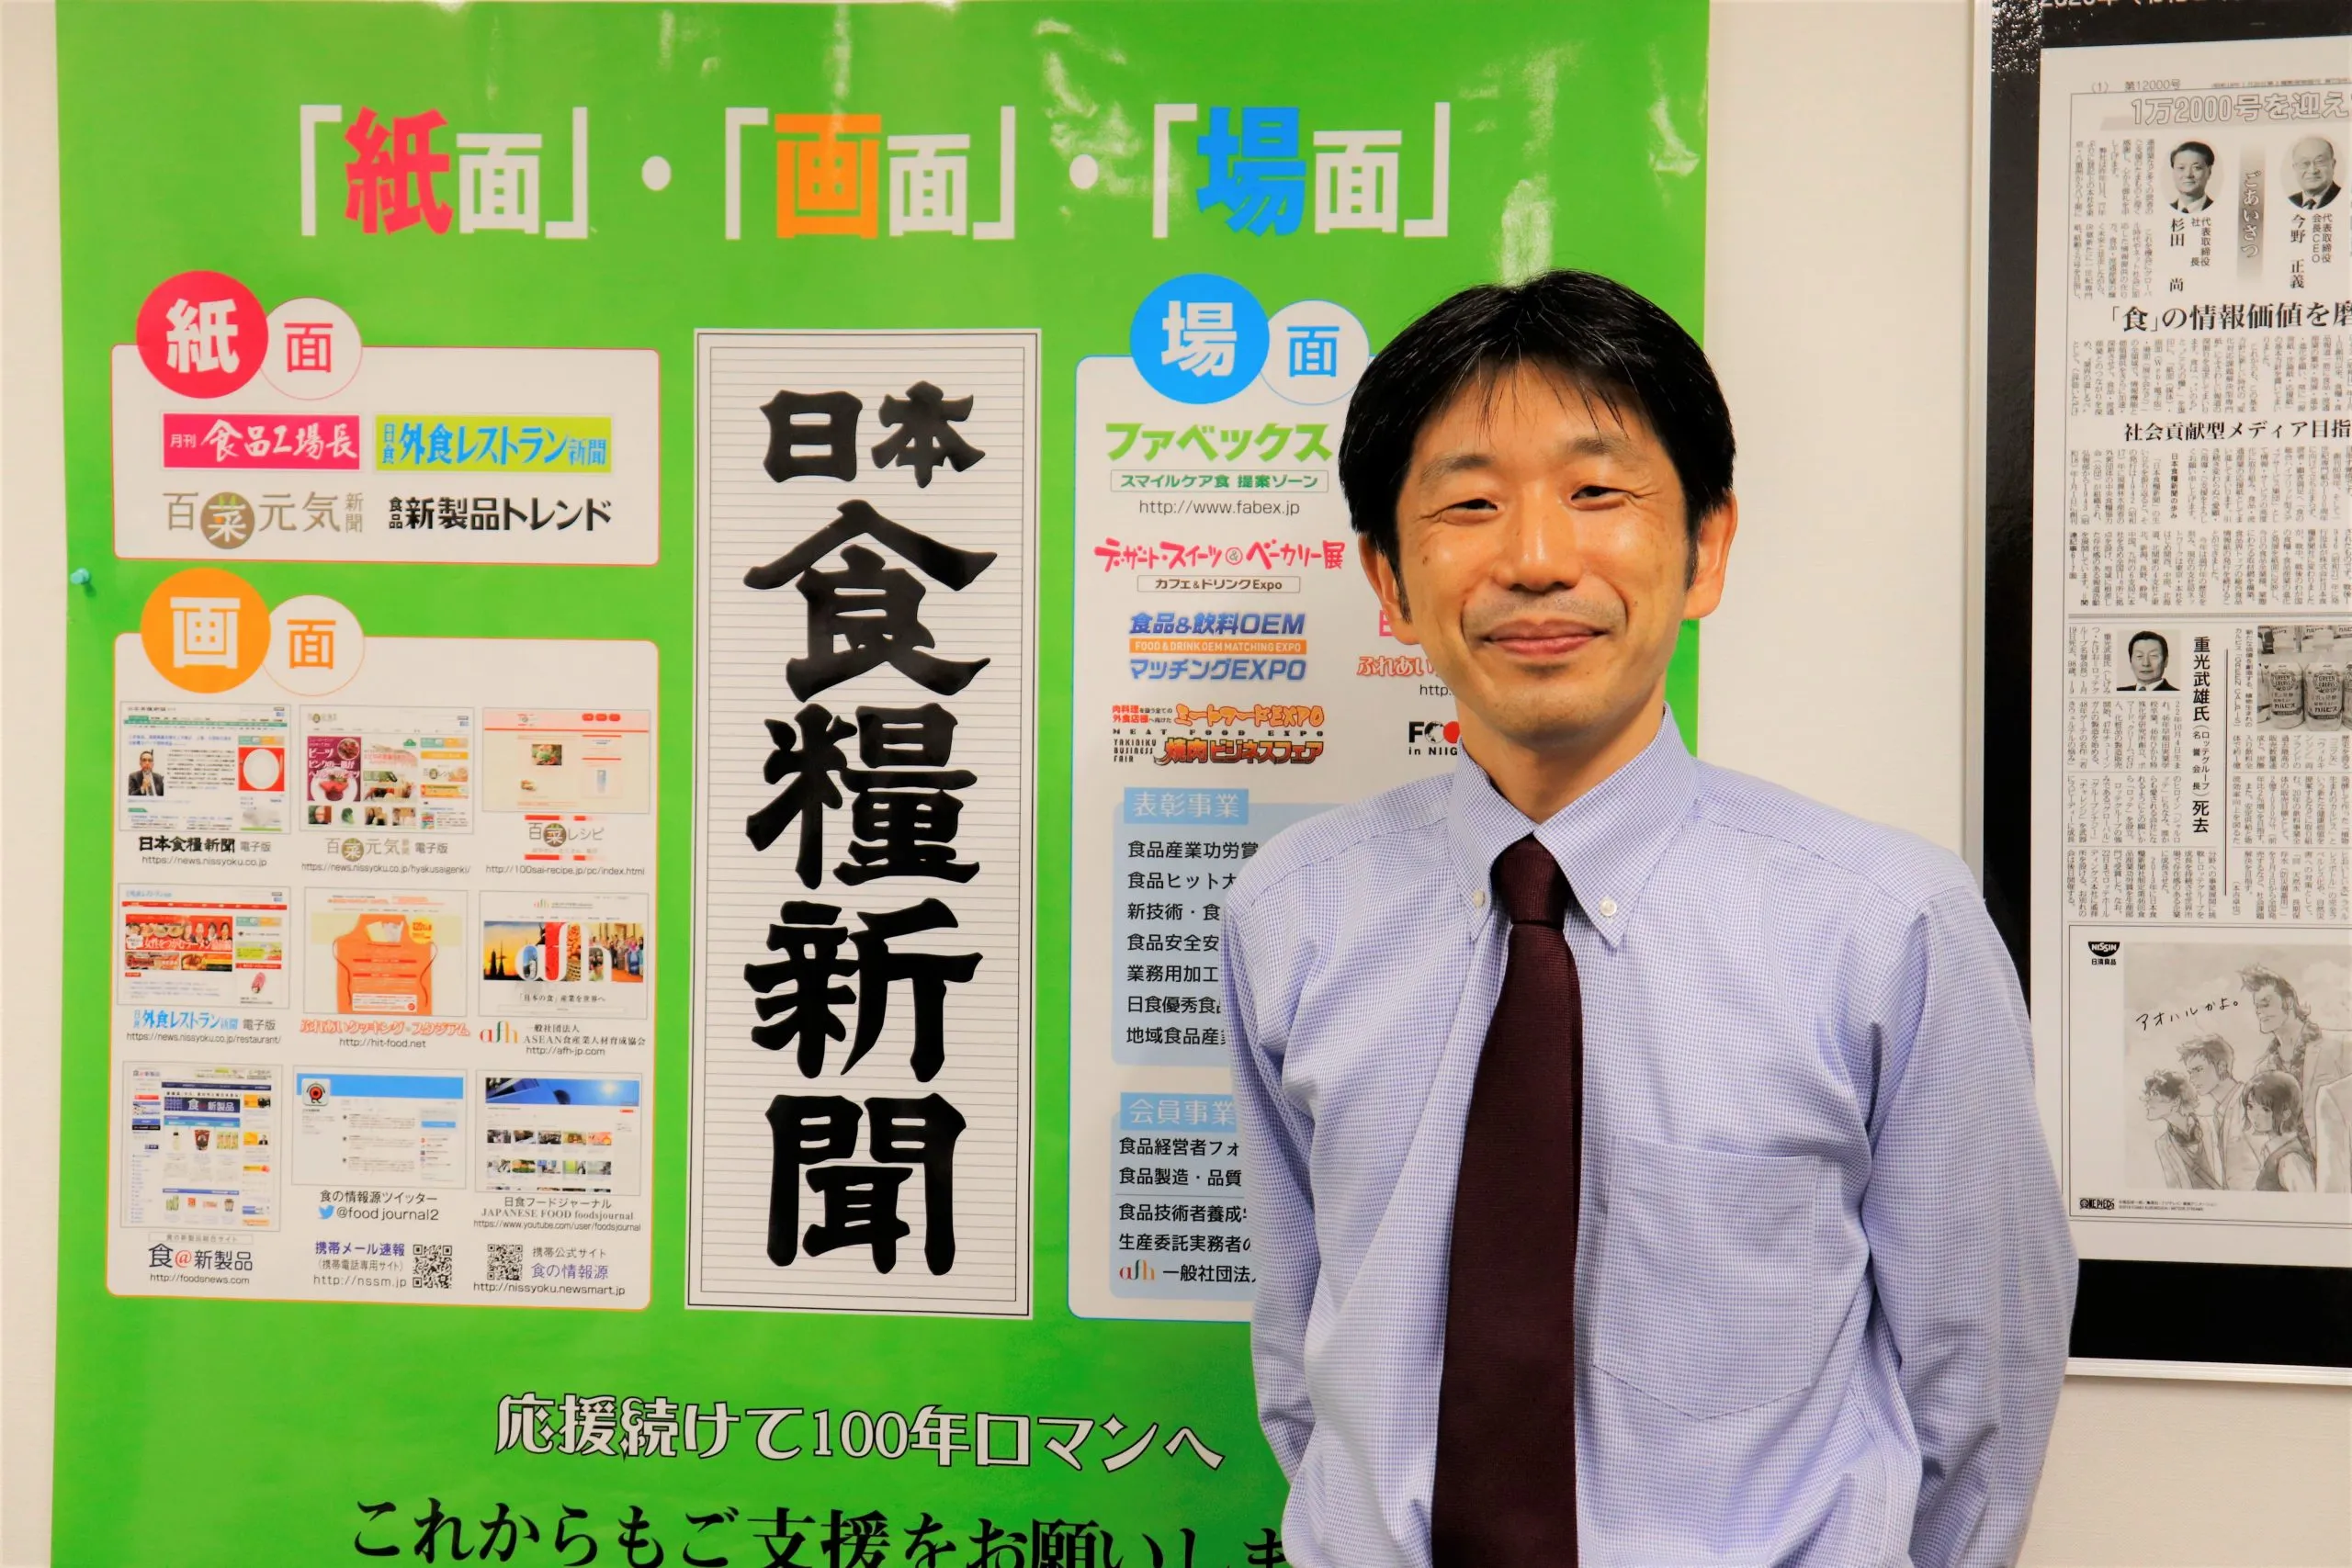 食品業界へ、俯瞰的な情報発信を。「日本食糧新聞社」の歴史と展望